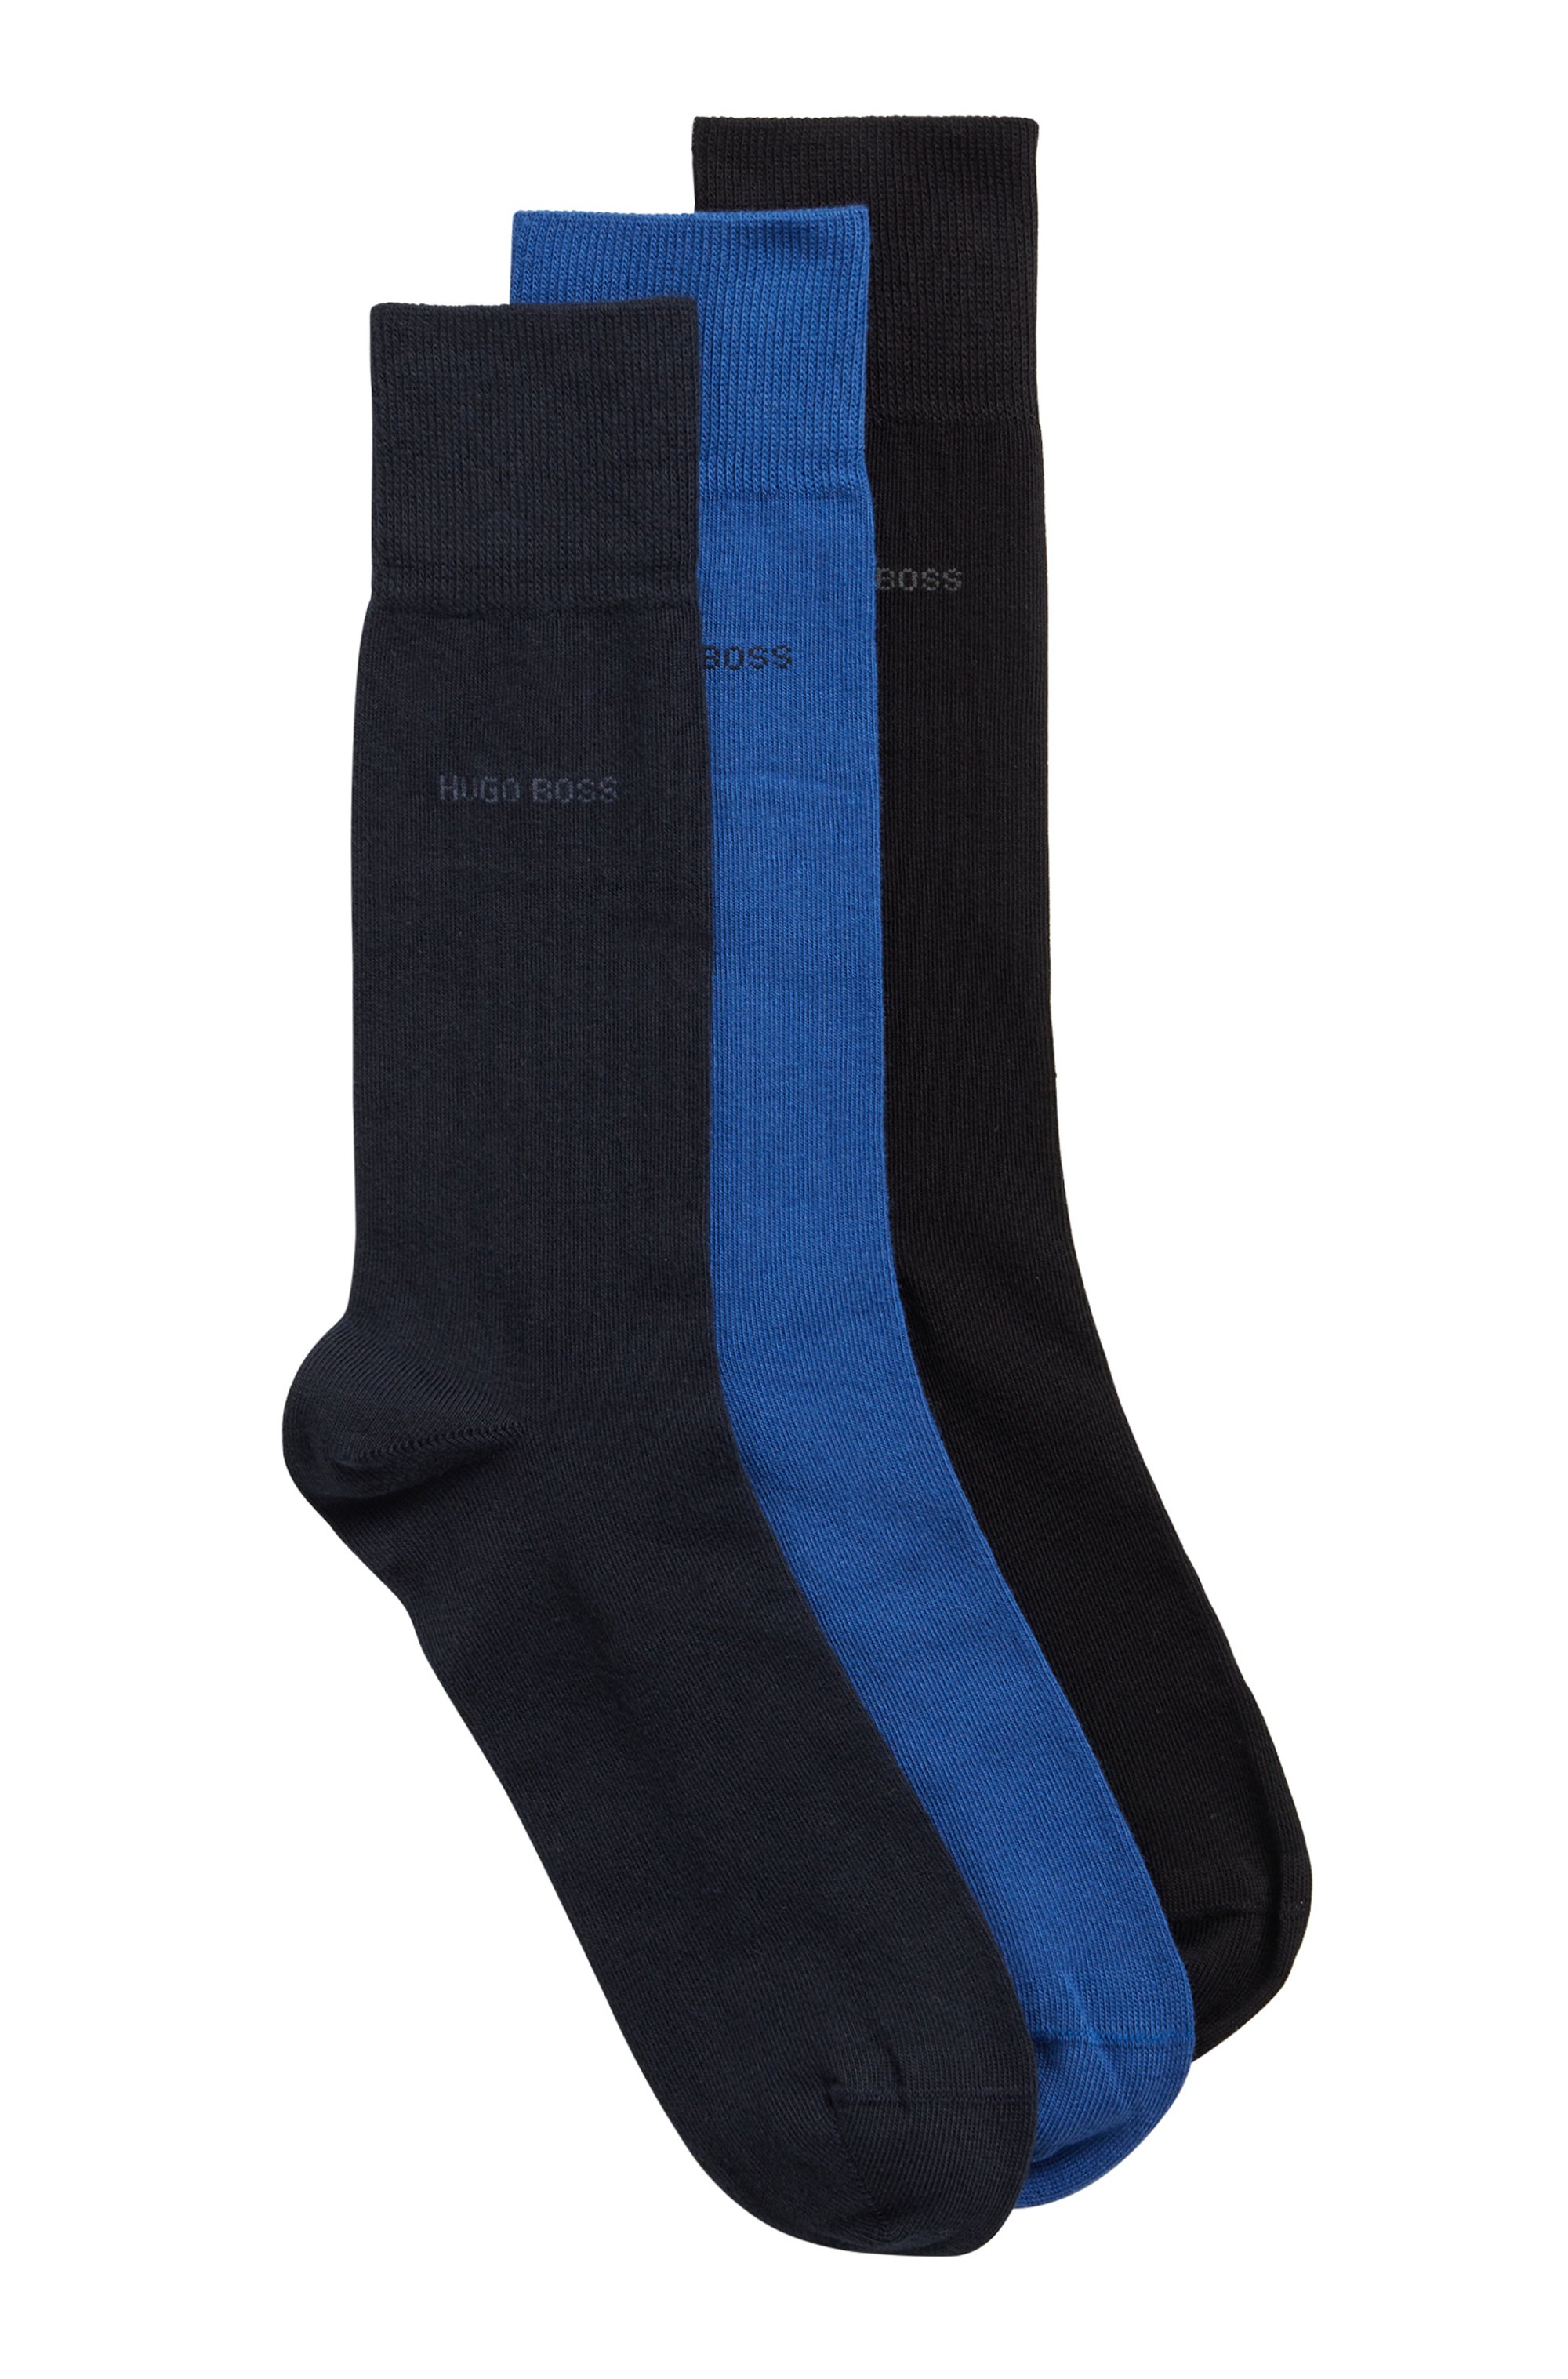 Mittelhohe Socken aus elastischem Baumwoll-Mix im Dreier-Pack, Gemustert